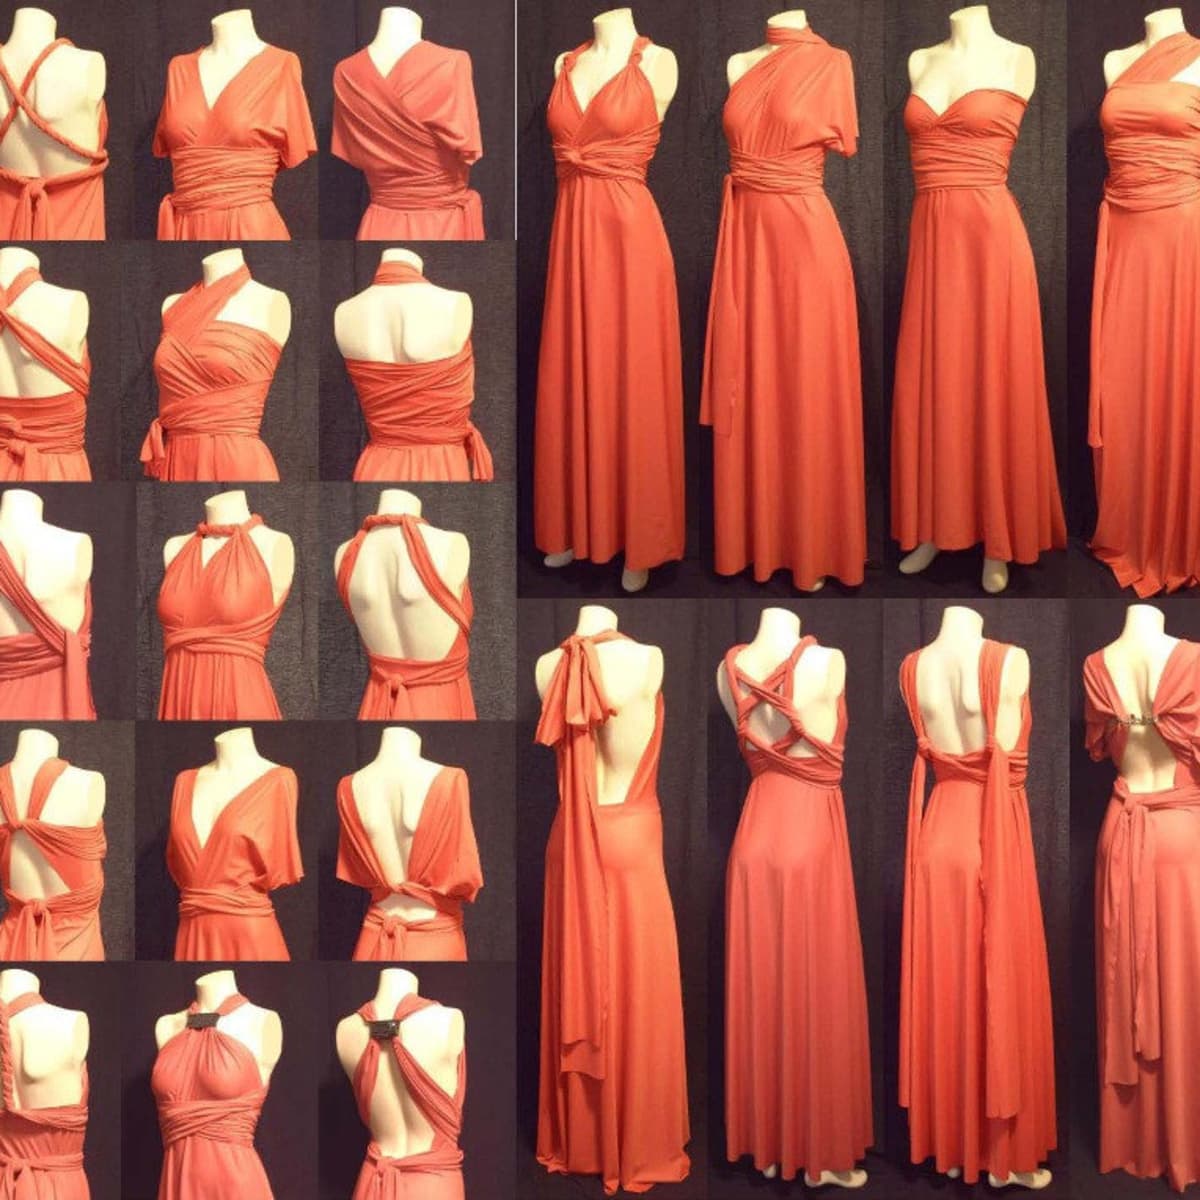 MULTI-WRAP DRESS STYLED 20 WAYS  How to Wear a Multi Wrap Dress 